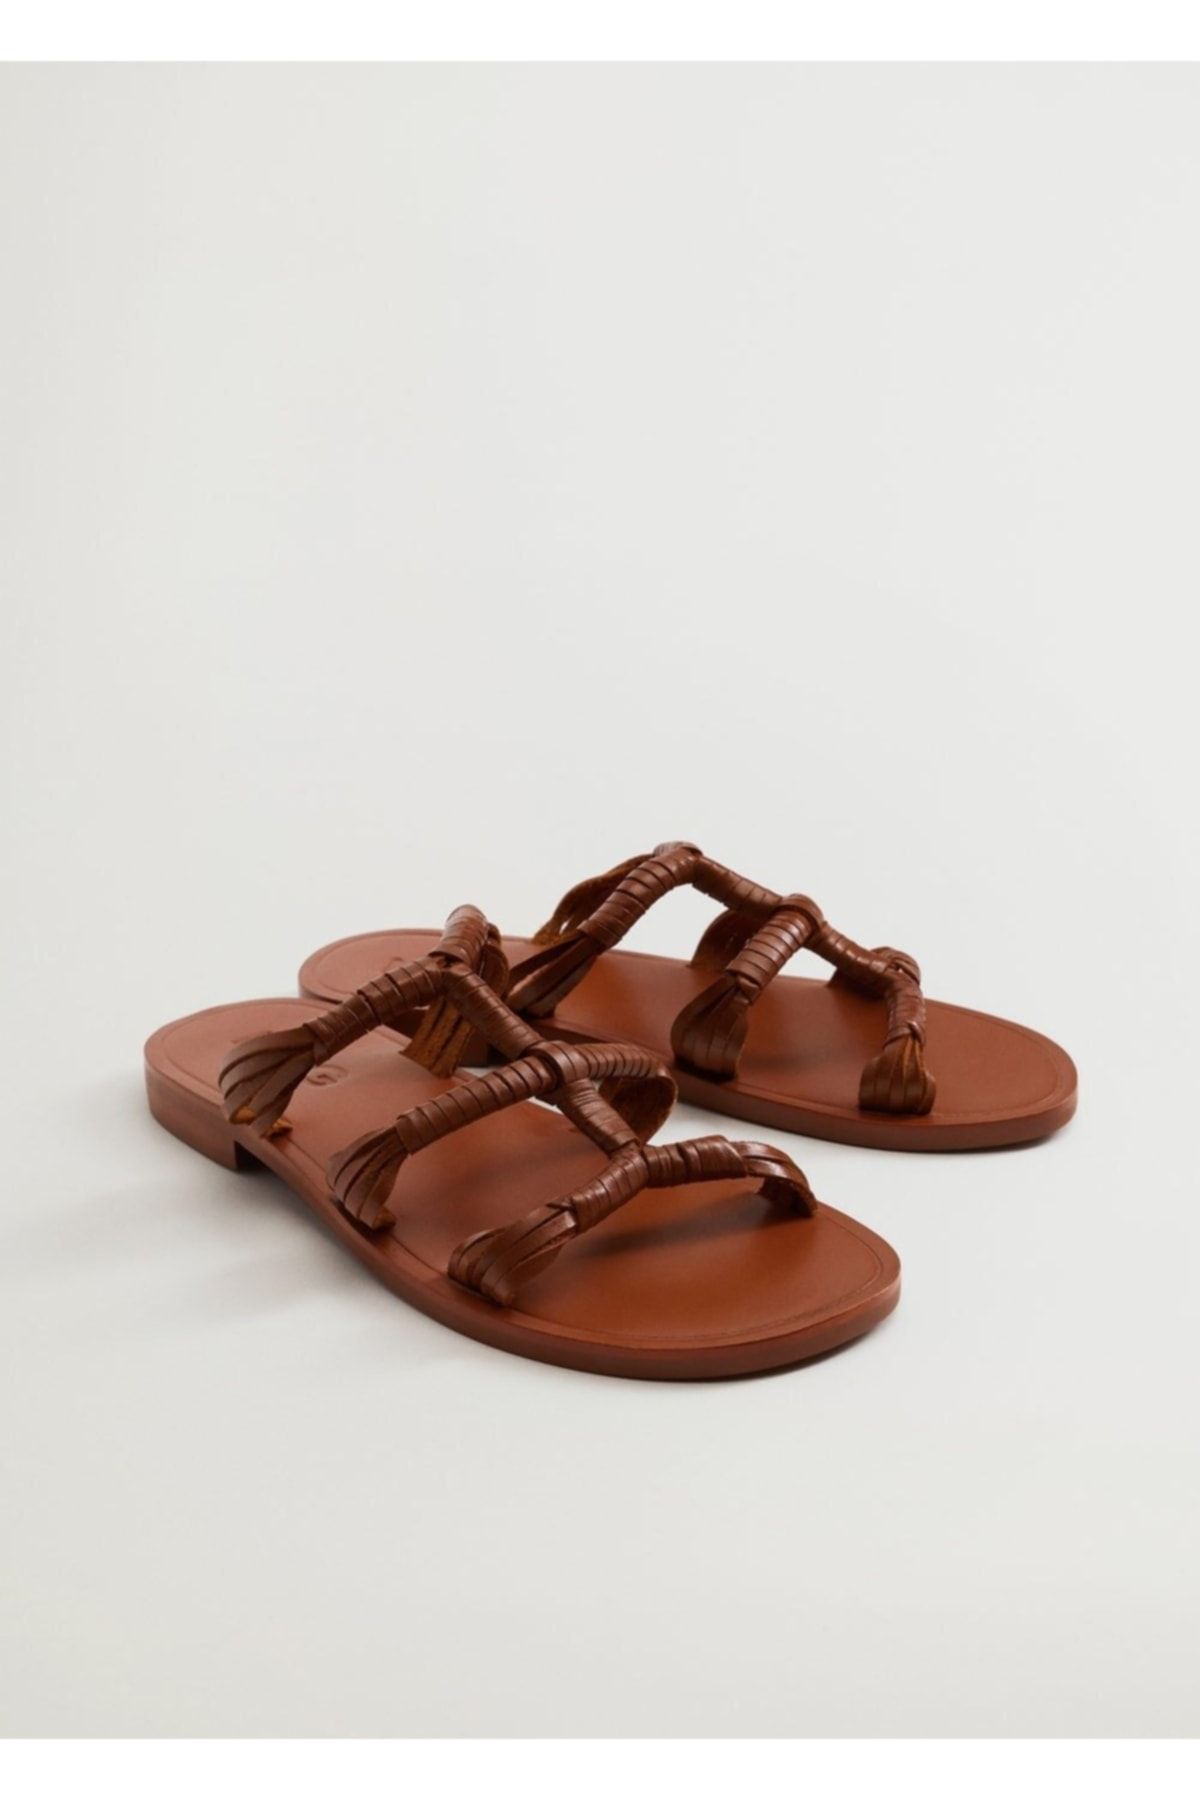 MANGO Kadın Orta Kahverengi Deri Bantlı Sandalet